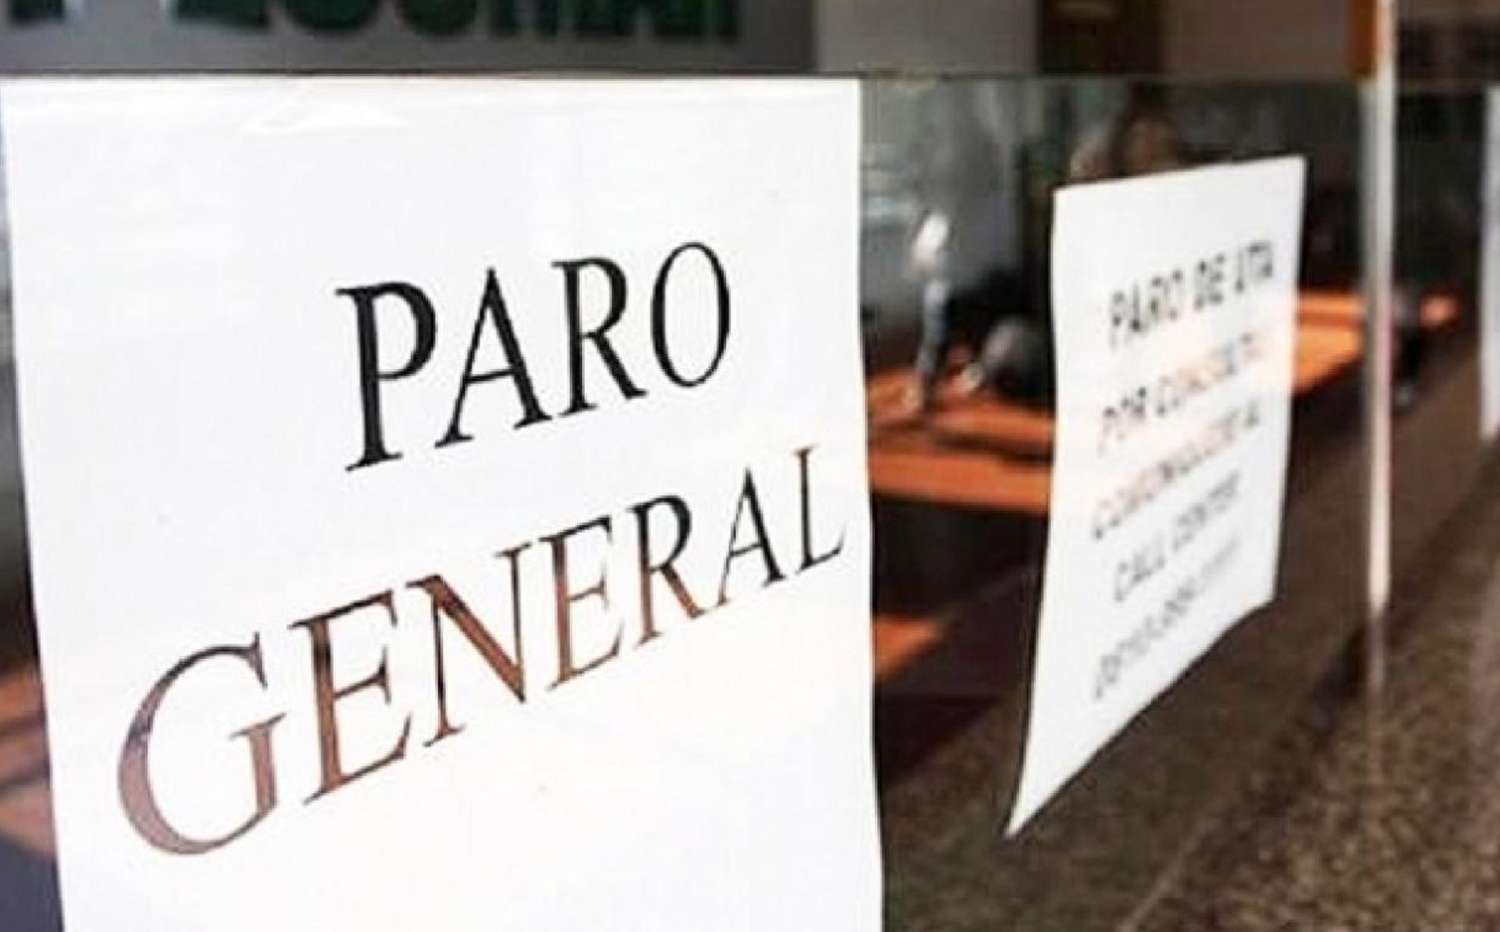 Qué servicios se verán afectados en Entre Ríos por el paro del 30 de abril